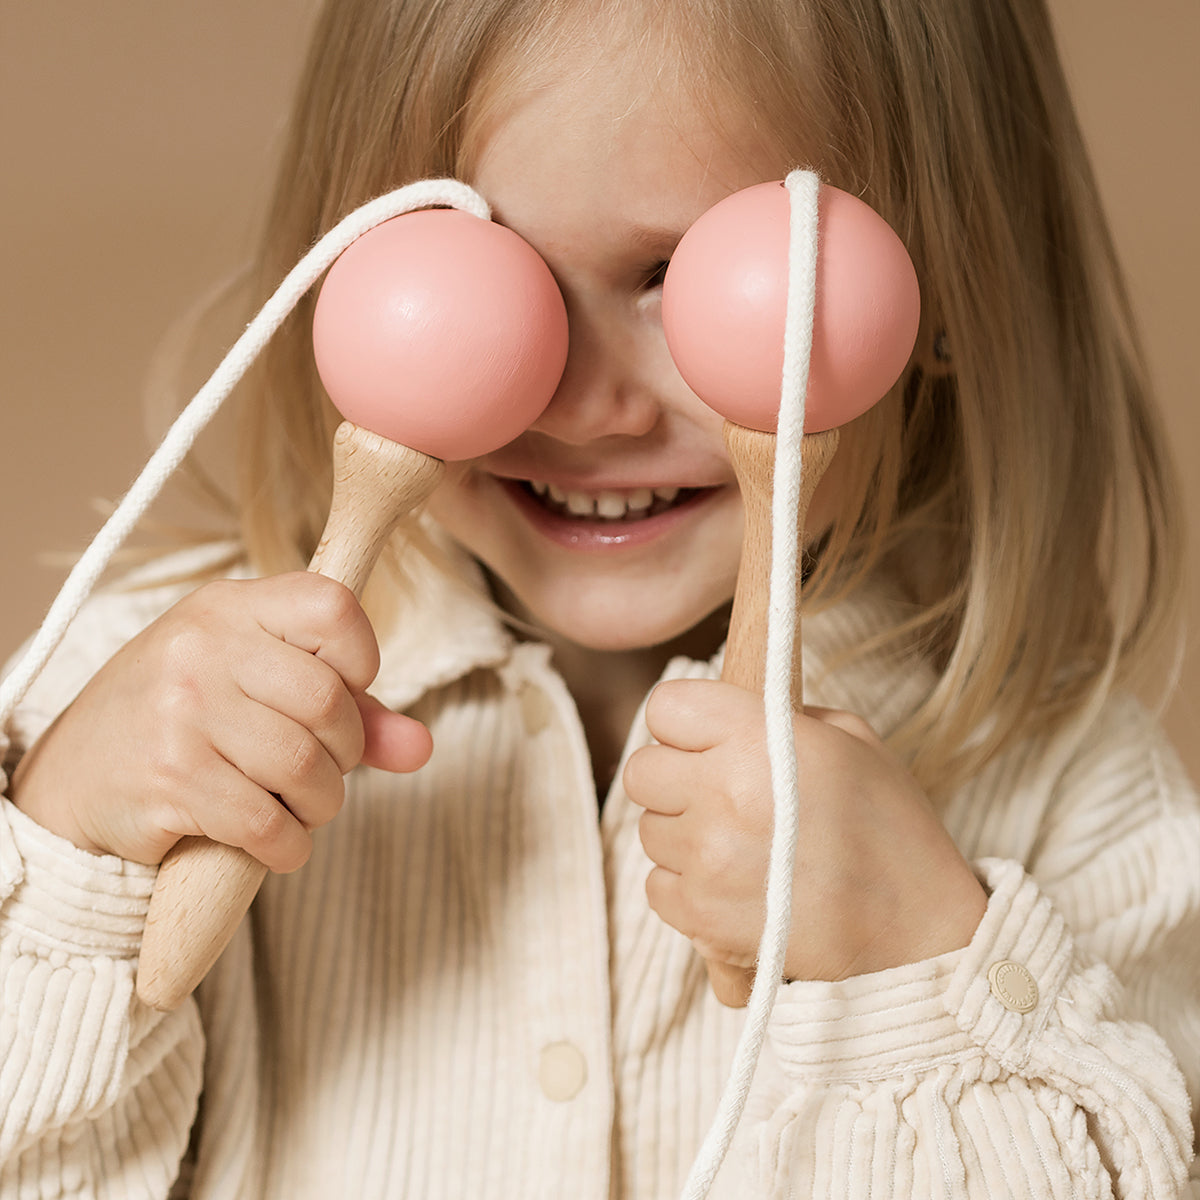 Zo wil elk kind wel touwtjespringen! Het Nobodinoz springtouw indian pink is duurzaam en ligt lekker in de hand. Urenlang buitenspeelplezier gegarandeerd met dit leuke springtouw. VanZus